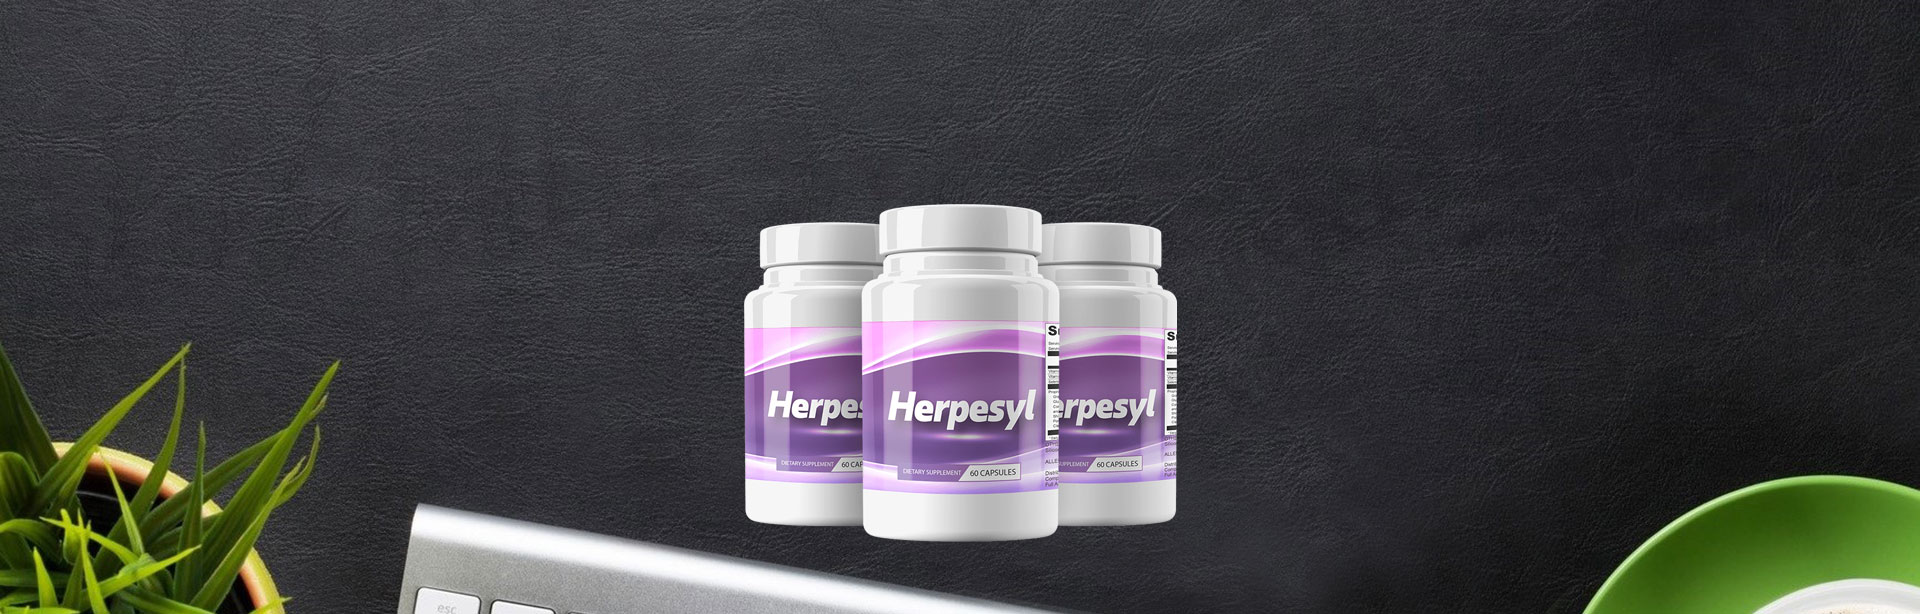 Herpesyl Discounts Site